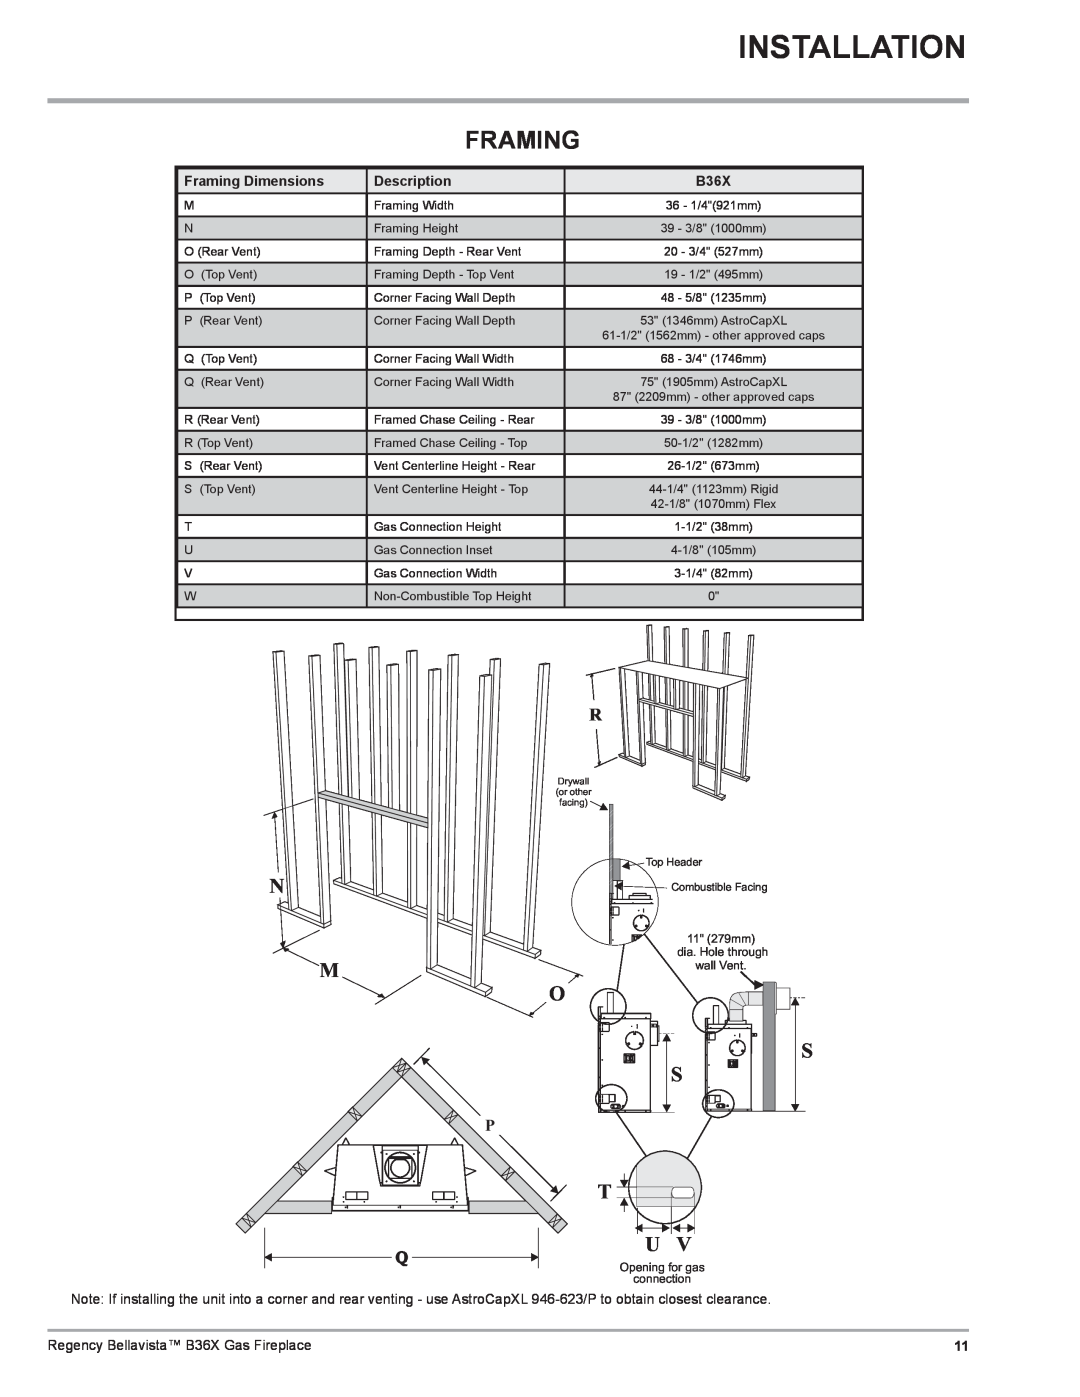 Regency B36X installation manual Installation, Framing Dimensions, Description 